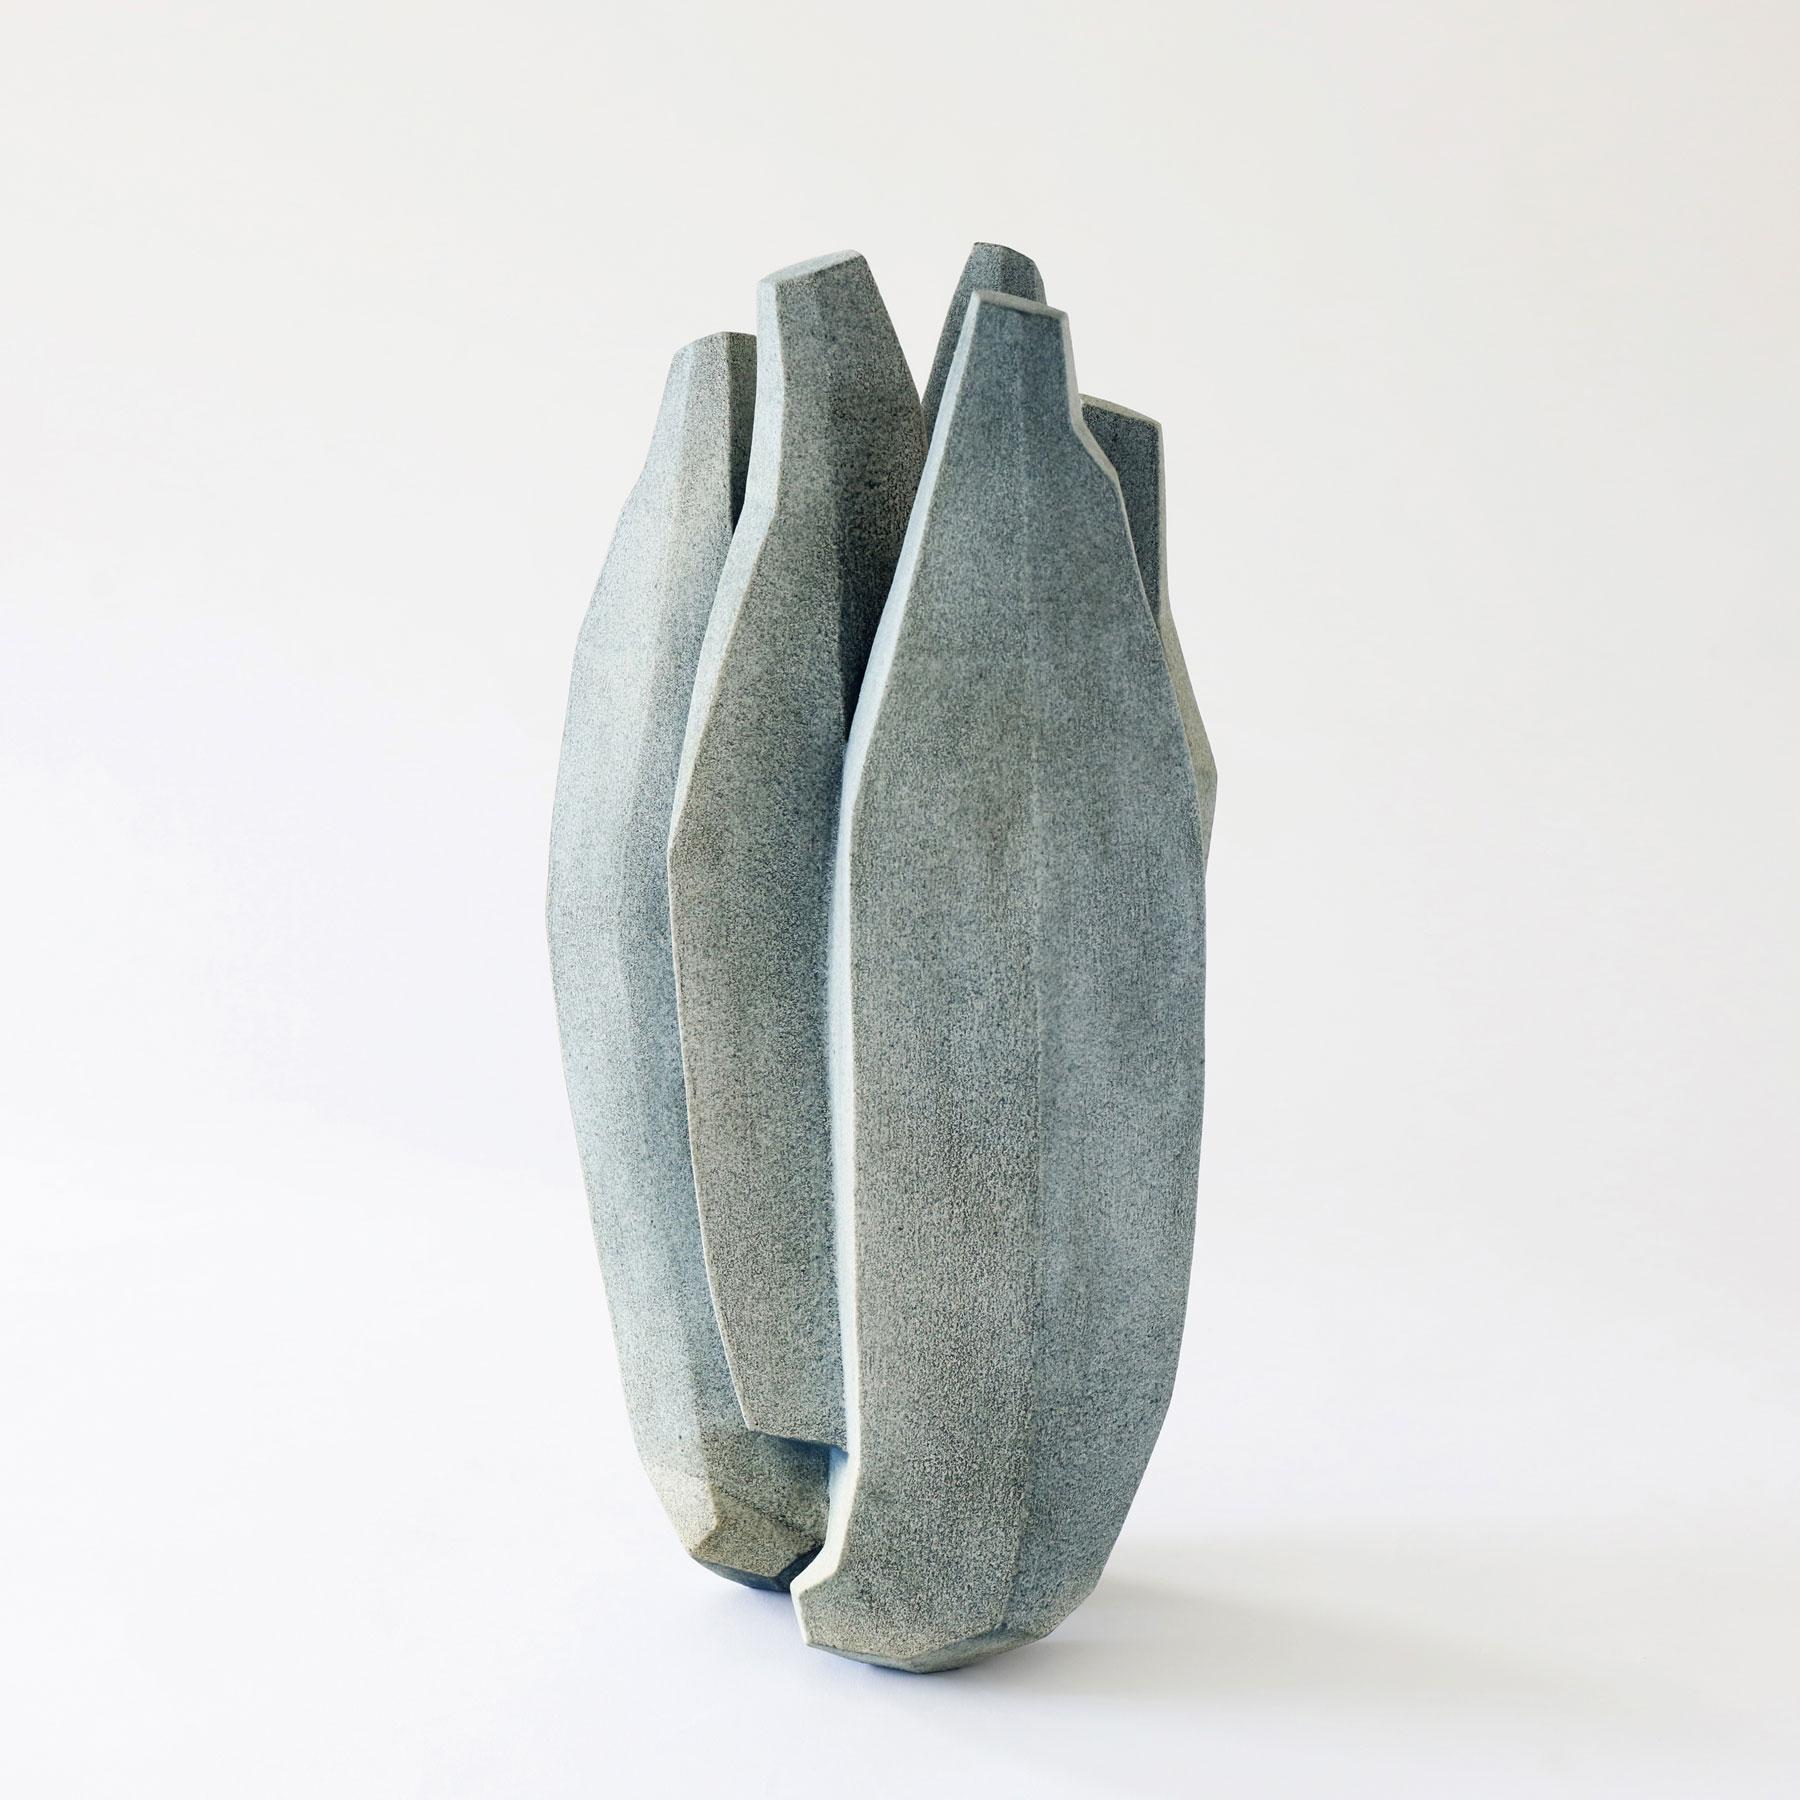 Danish Contemporary Ceramic Sculptures by Turi Heisselberg Pedersen